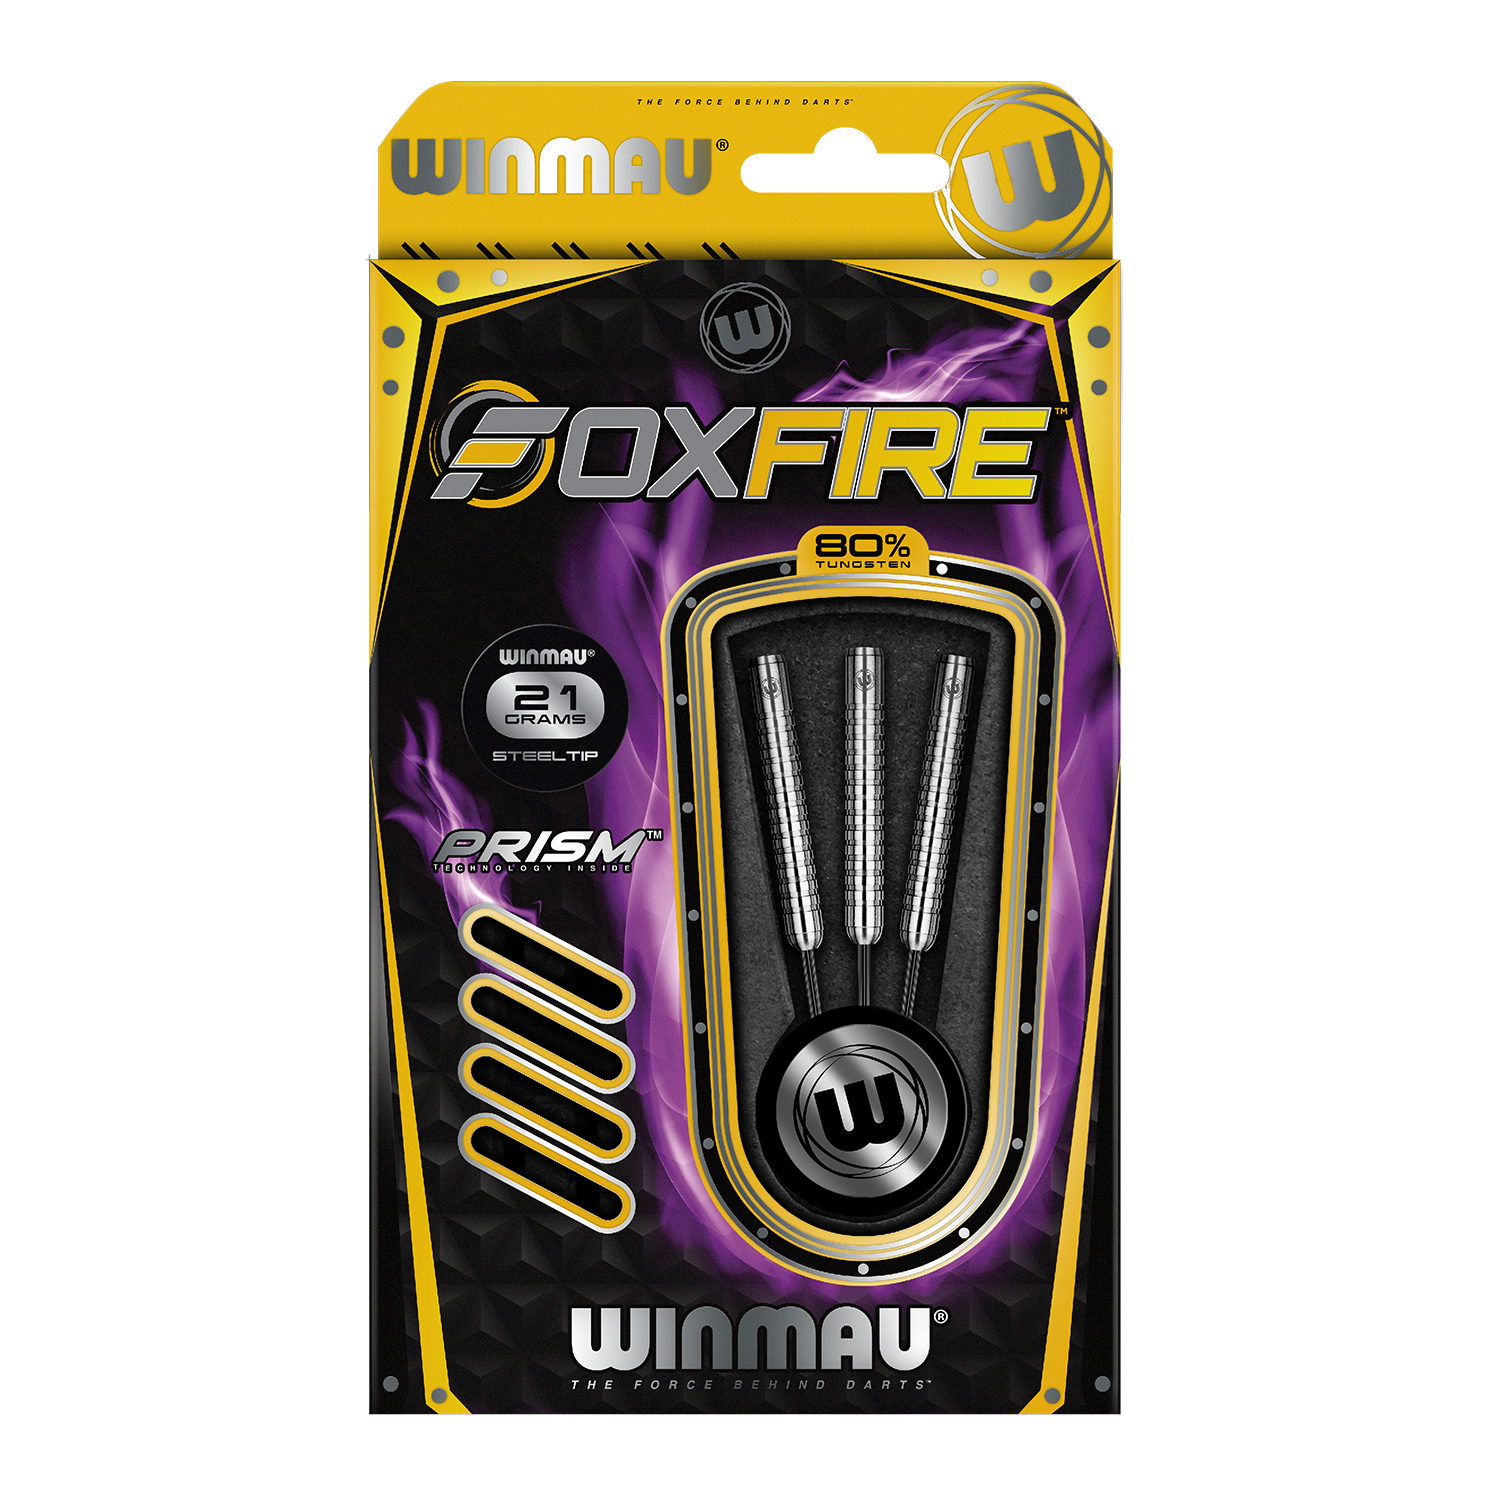 Winmau Foxfire 1 Steeldarts